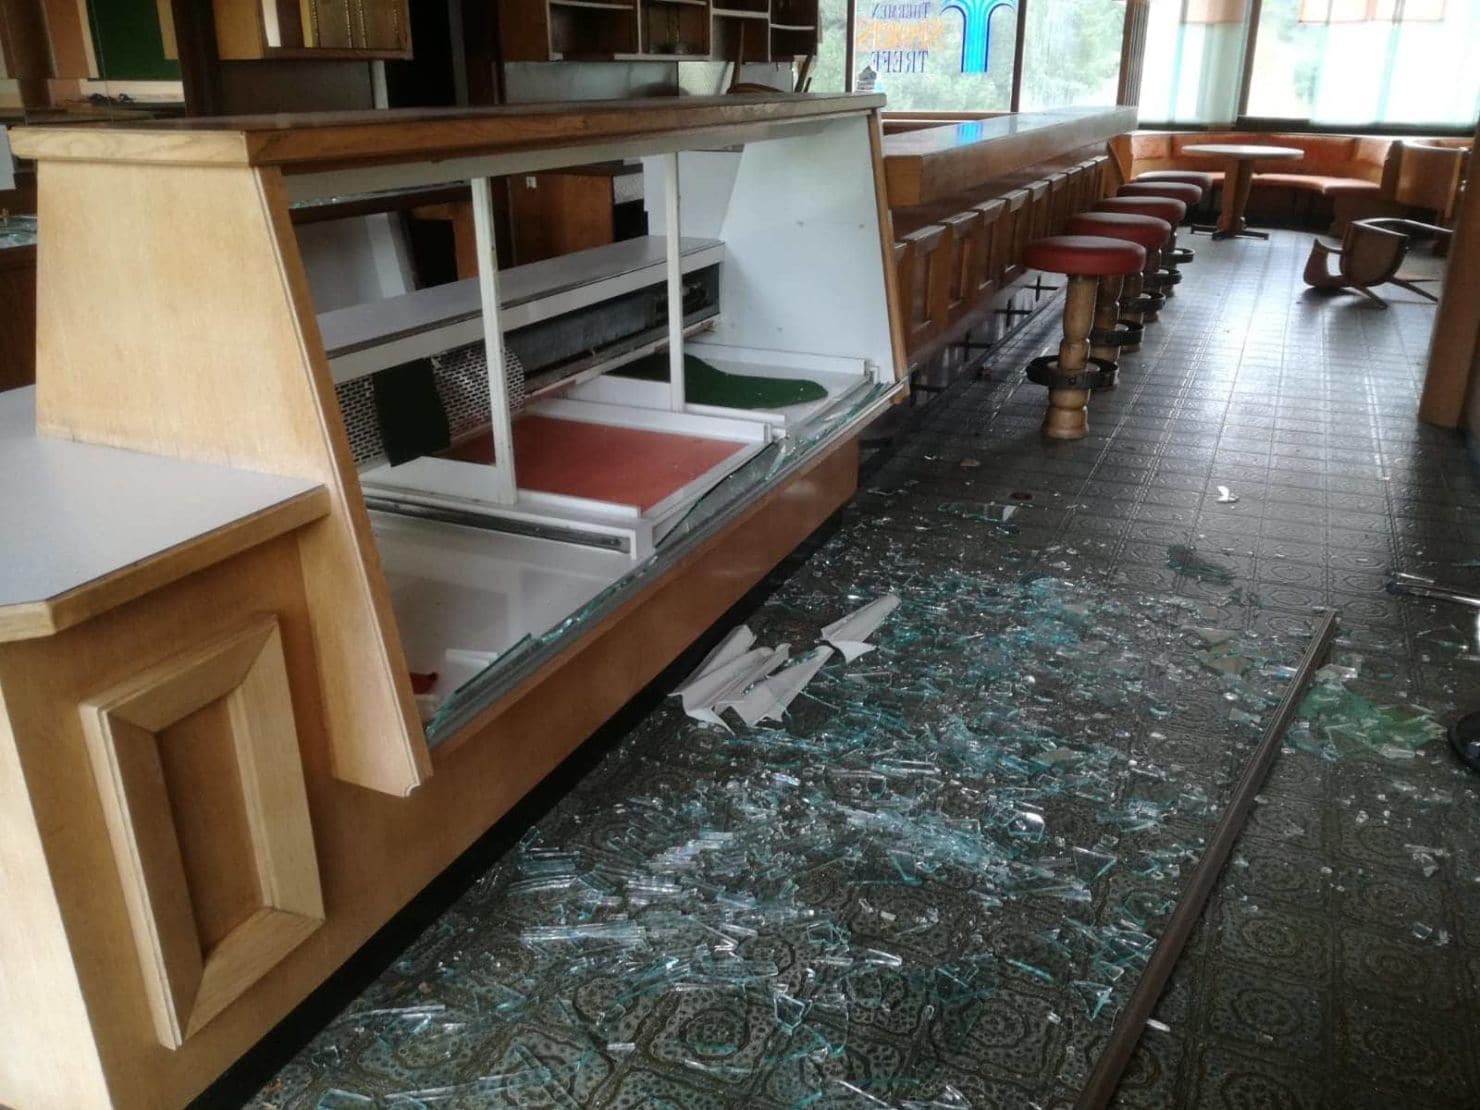 Eine Unzahl an aufgestellten Möbeln wurde von den Tätern beschädigt und umgeworfen sowie die Räumlichkeiten stark verwüstet.